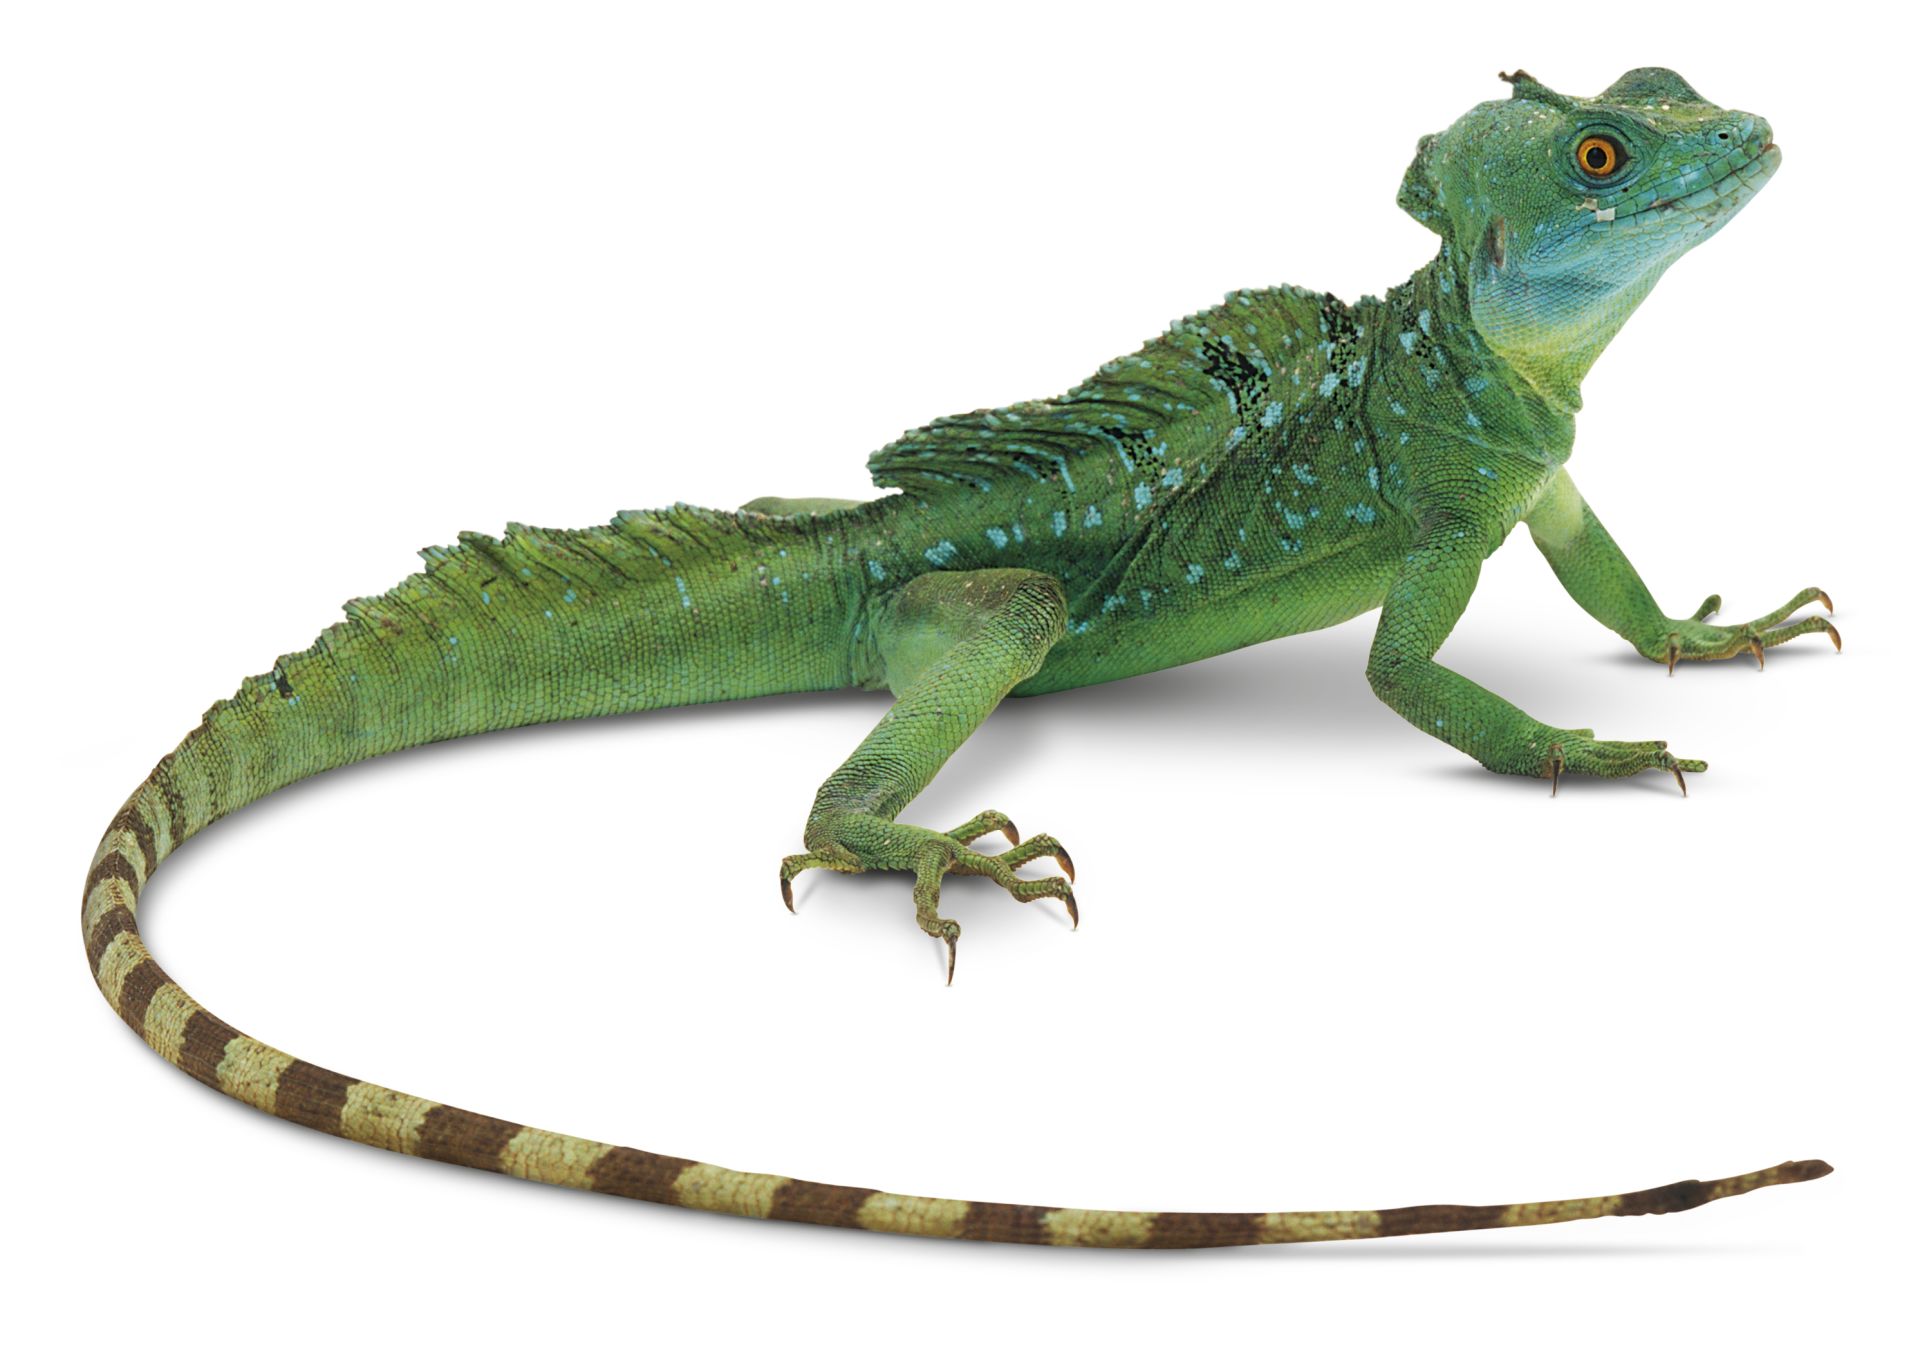 Helmeted Lizard | Green Basilisk Lizard | DK Find Out